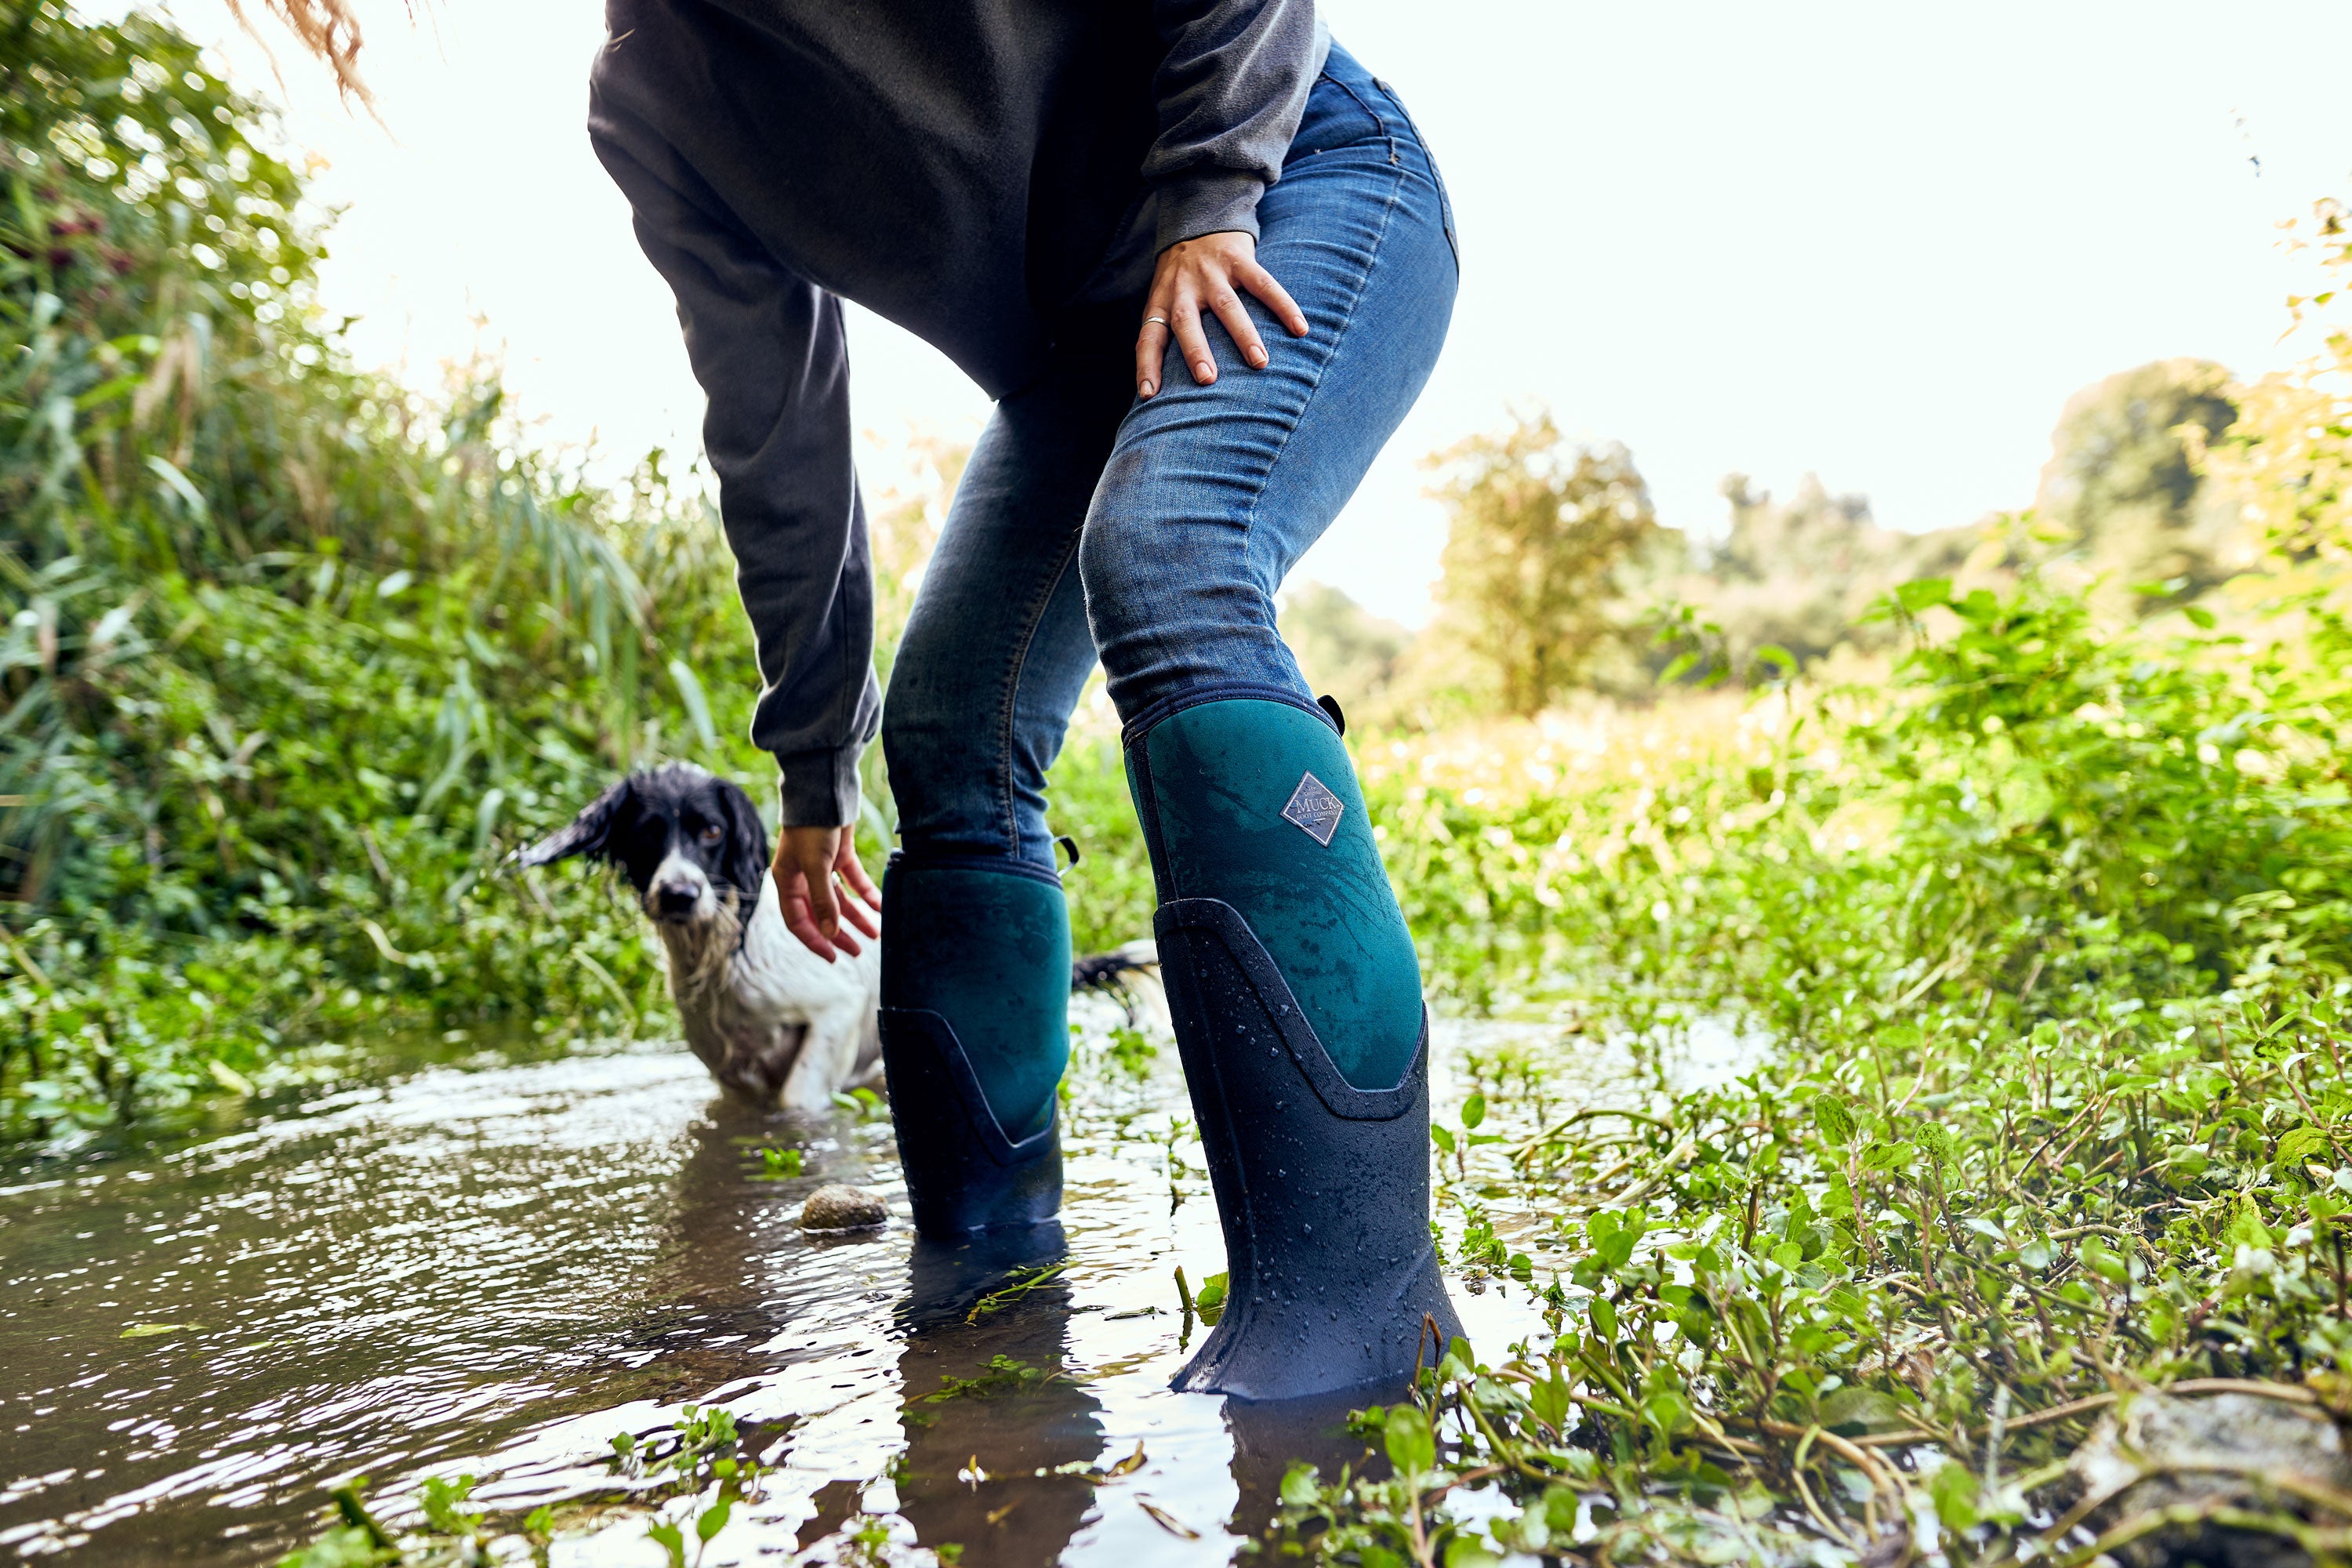 Eine nach vorn gebeugte Frau in einem Paar Muck Boots auf einem überschwemmten Weg mit Vegetation um sie herum und einem schwarz-weißen Hund im Hintergrund